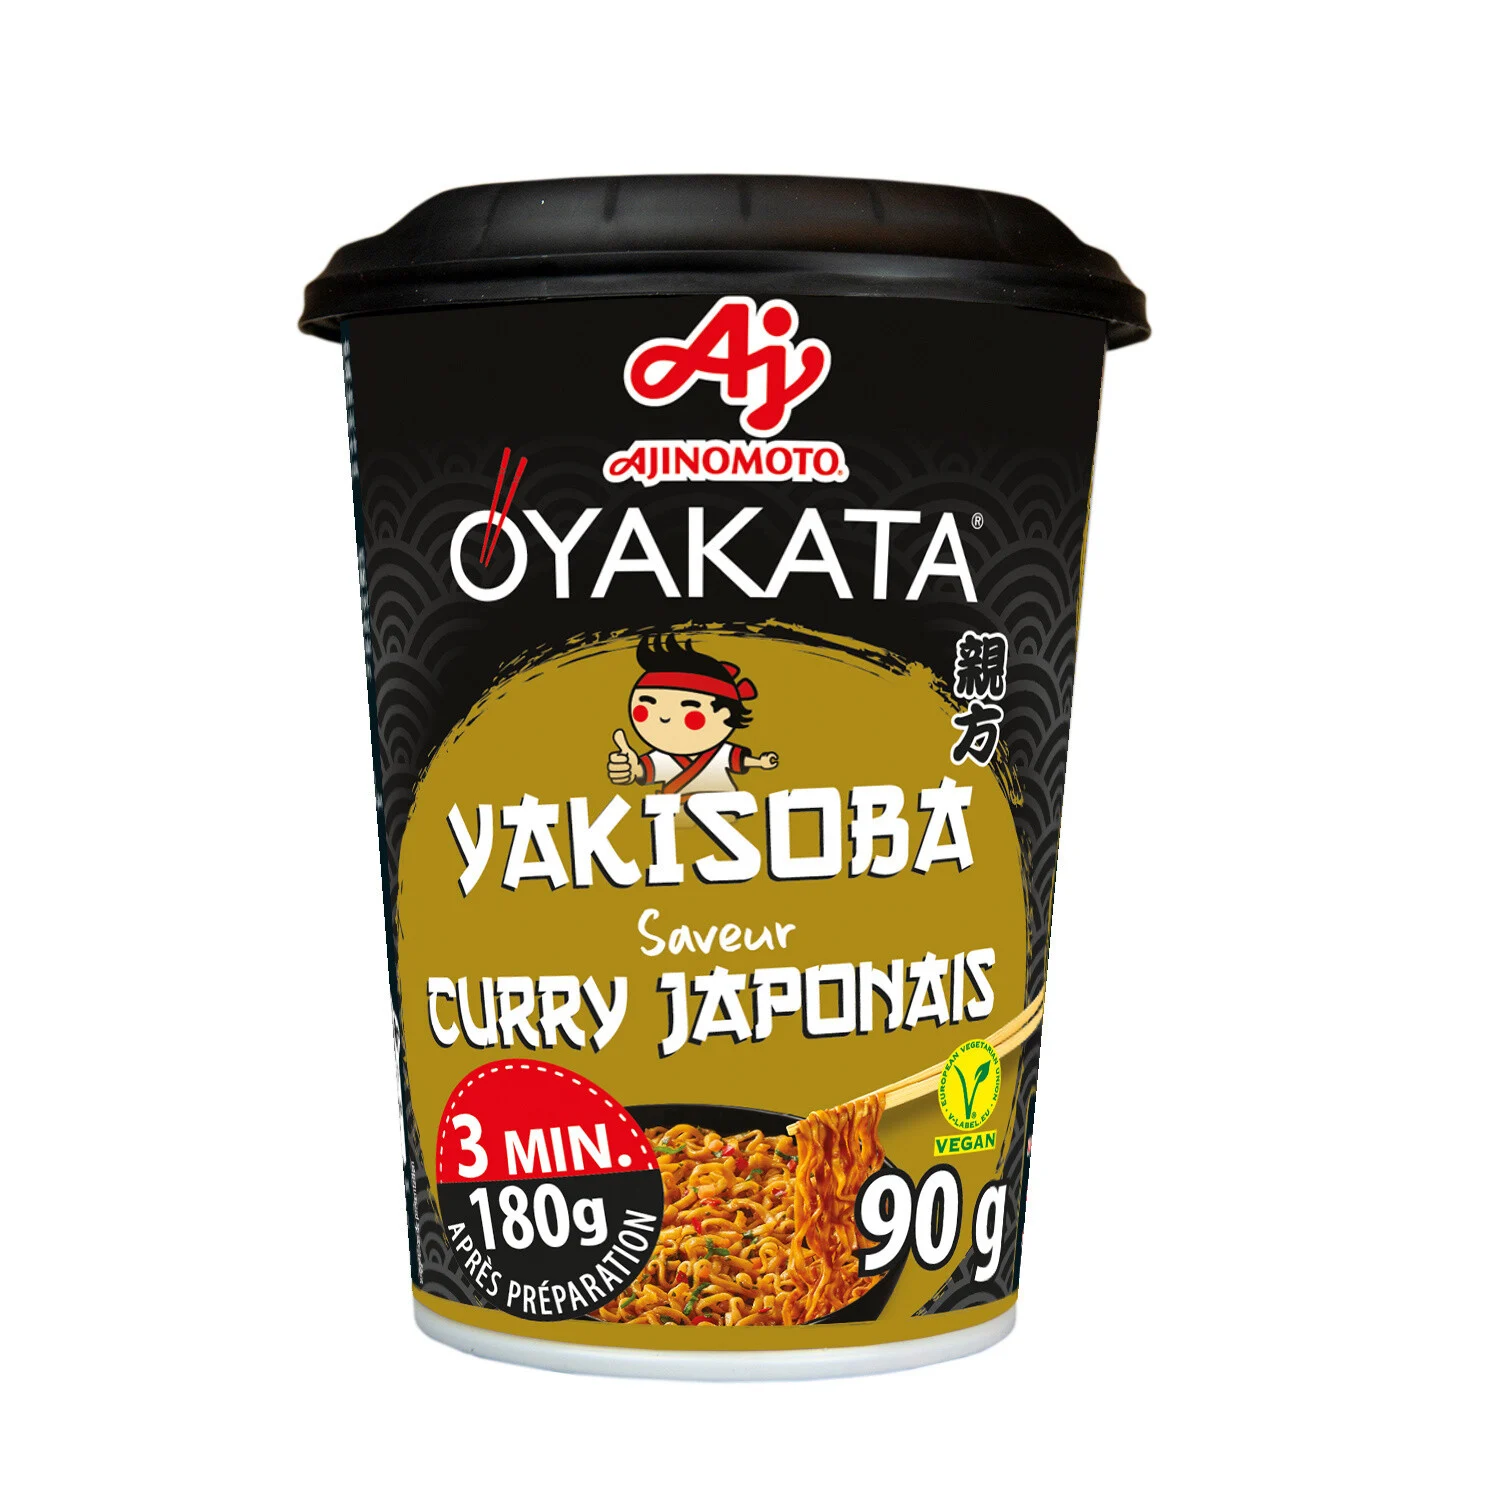 Nouilles Sautées Saveur Curry Japonais 90g - Oyakata